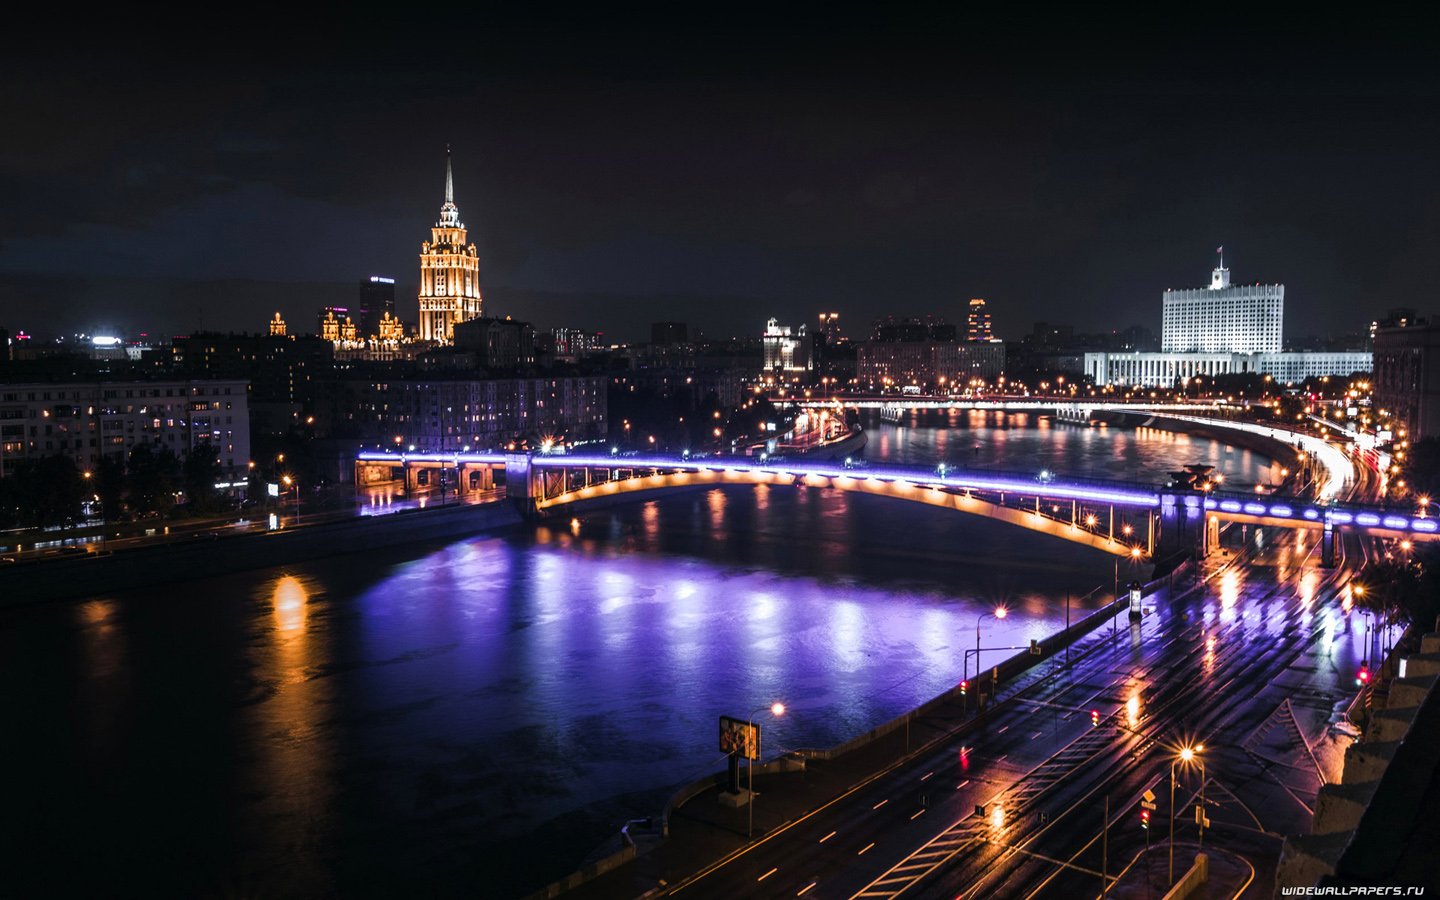 Насколько вечером. Фрунзенская набережная ночью. Большой Москворецкий мост. Ночная Москва. Вечерний город.